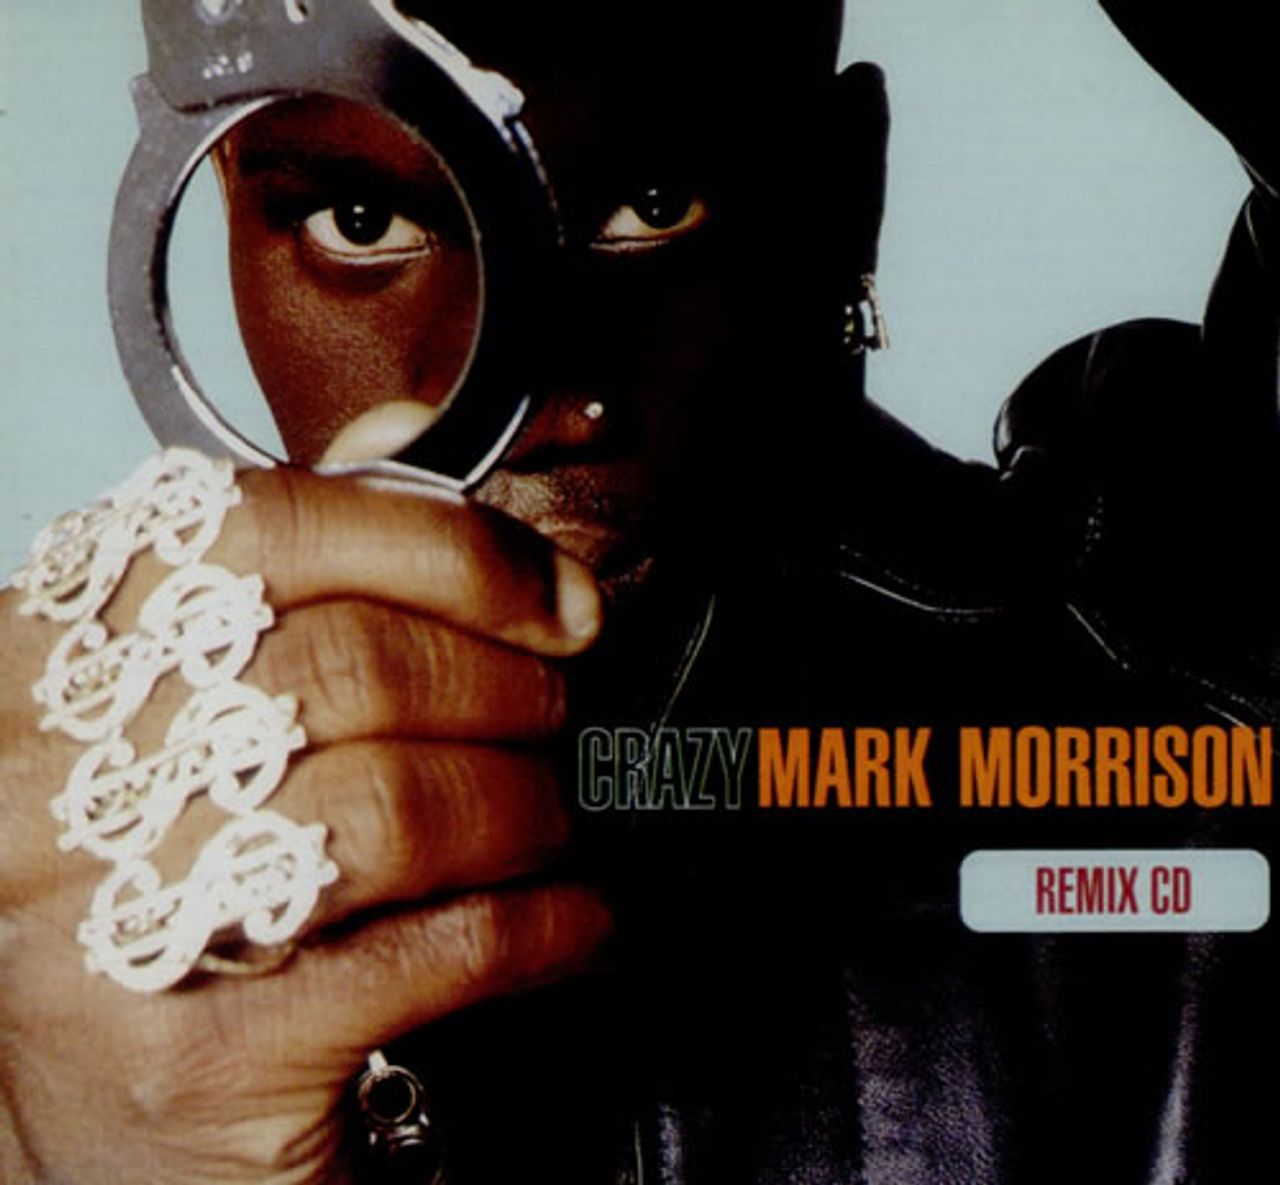 Mark Morrison Crazy UK CD single — RareVinyl.com